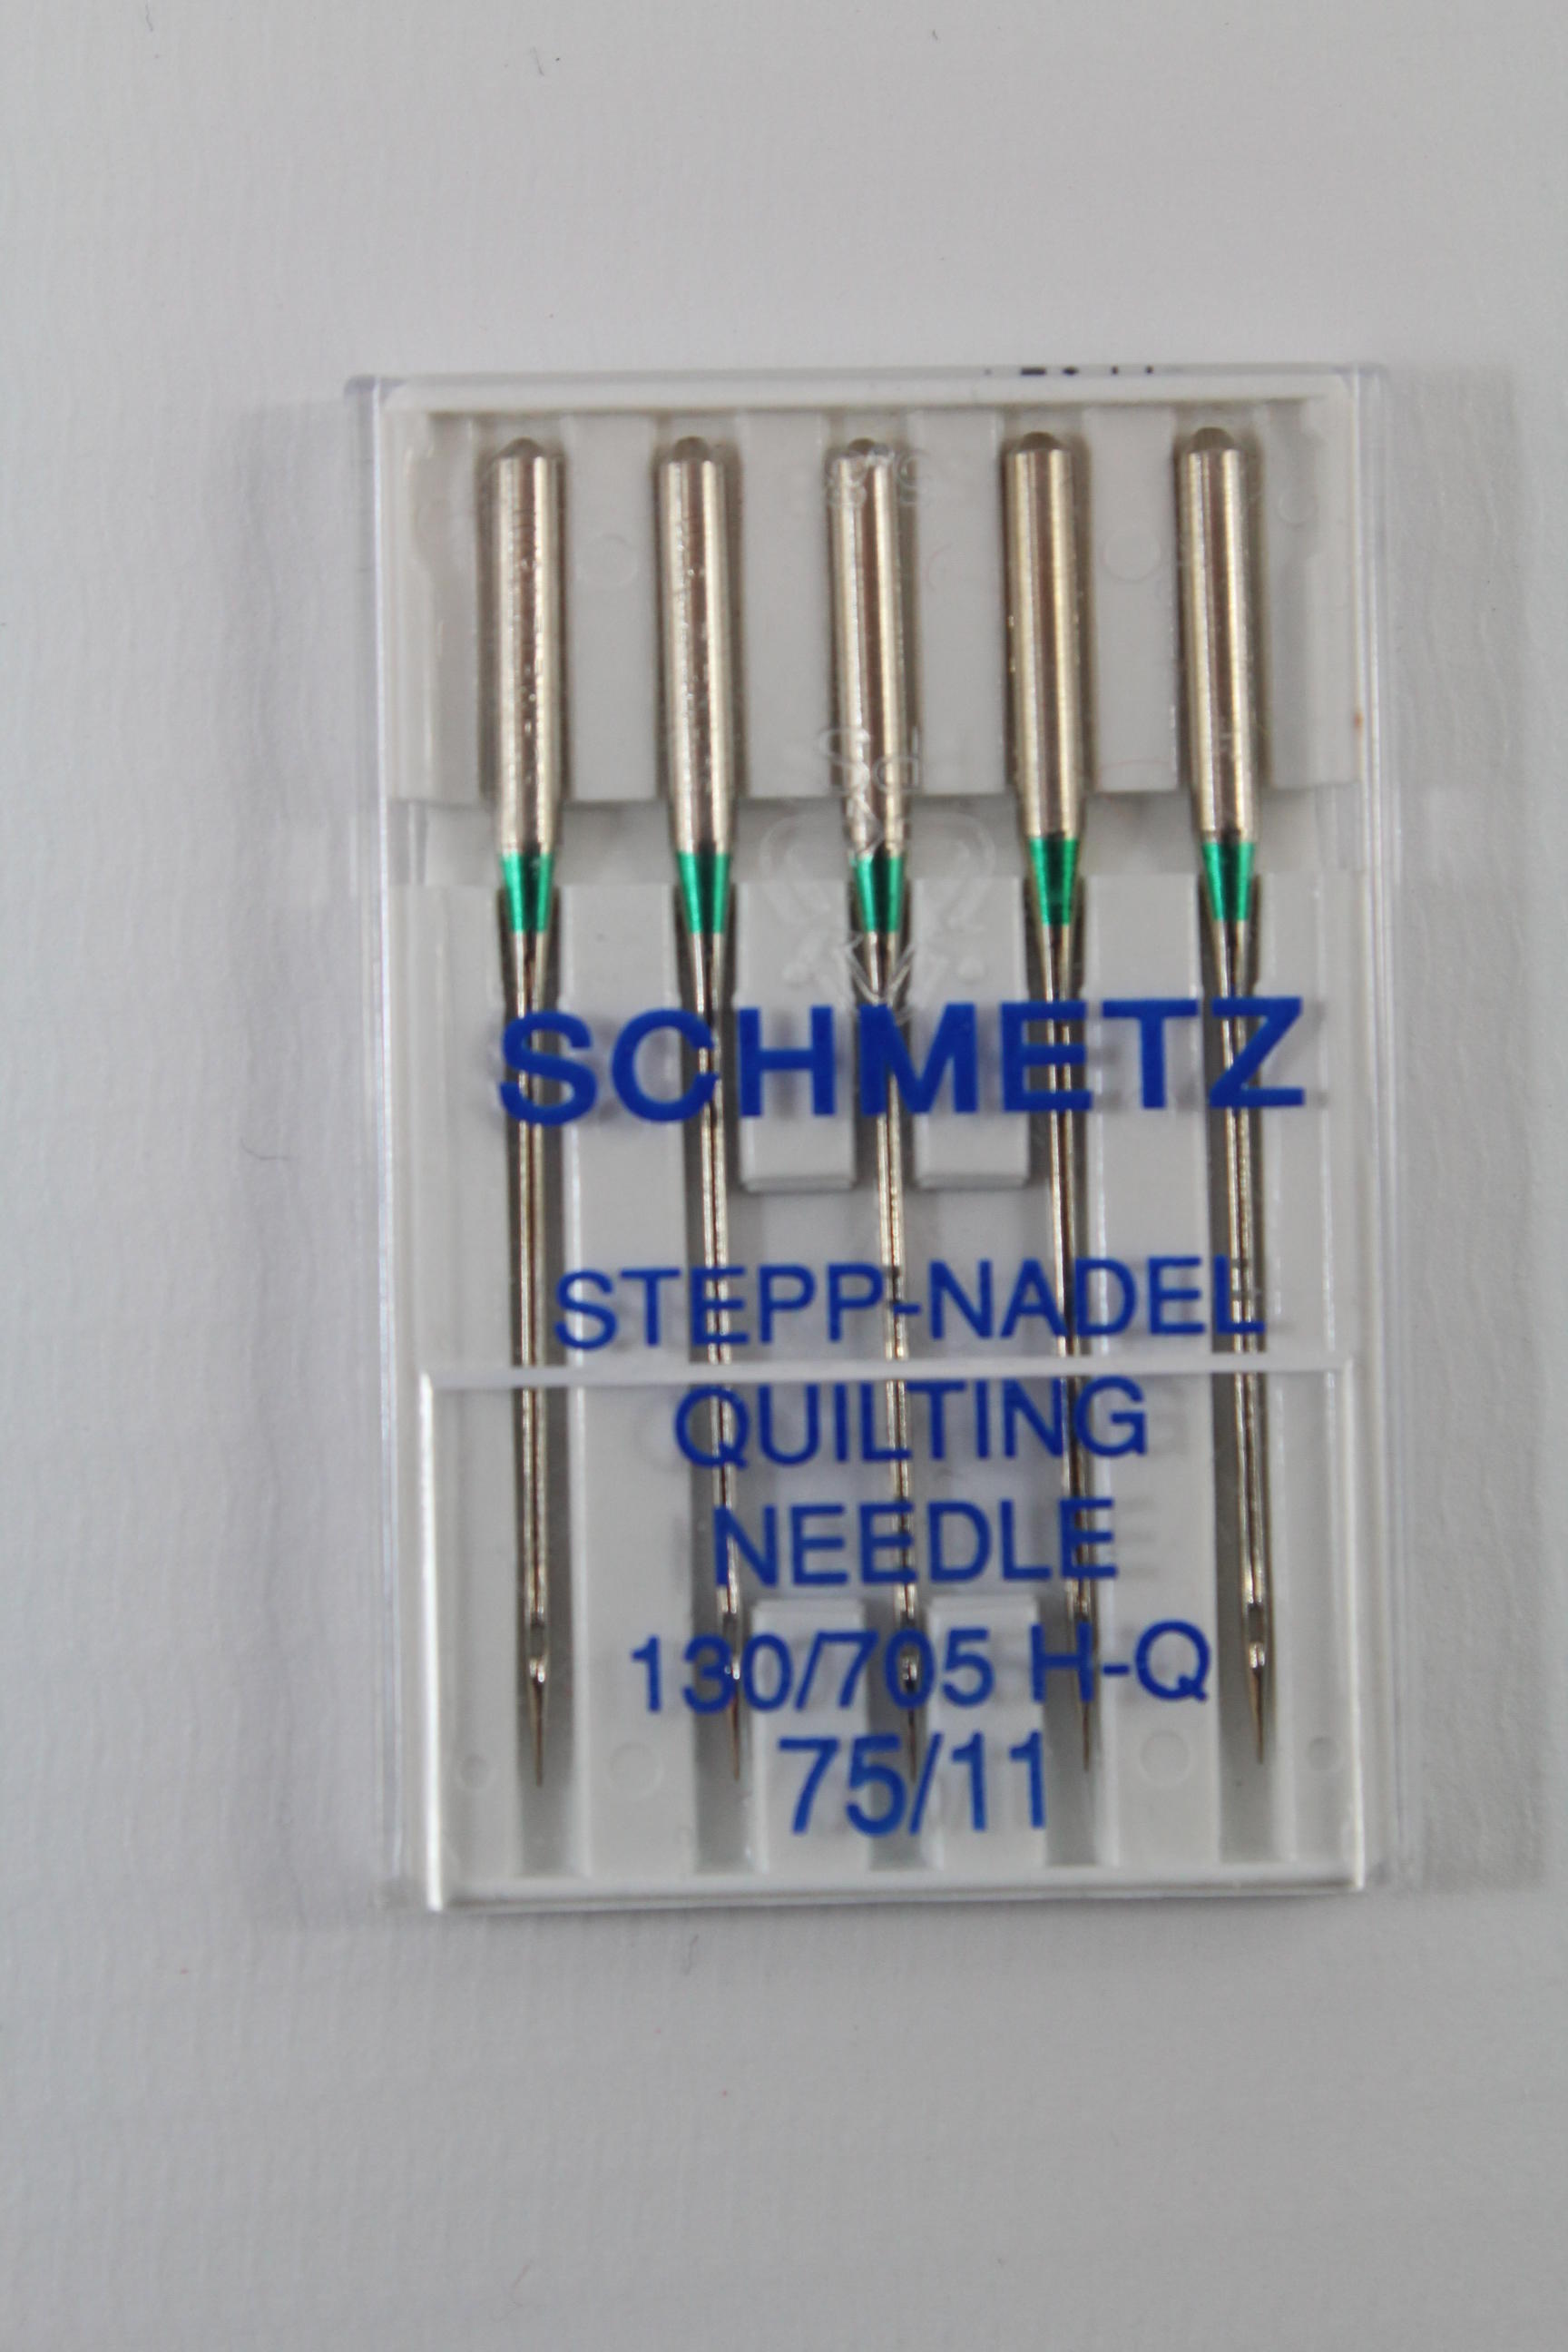 Schmetz Stepp-Nadel Quilting 130/705 H-Q 75/11